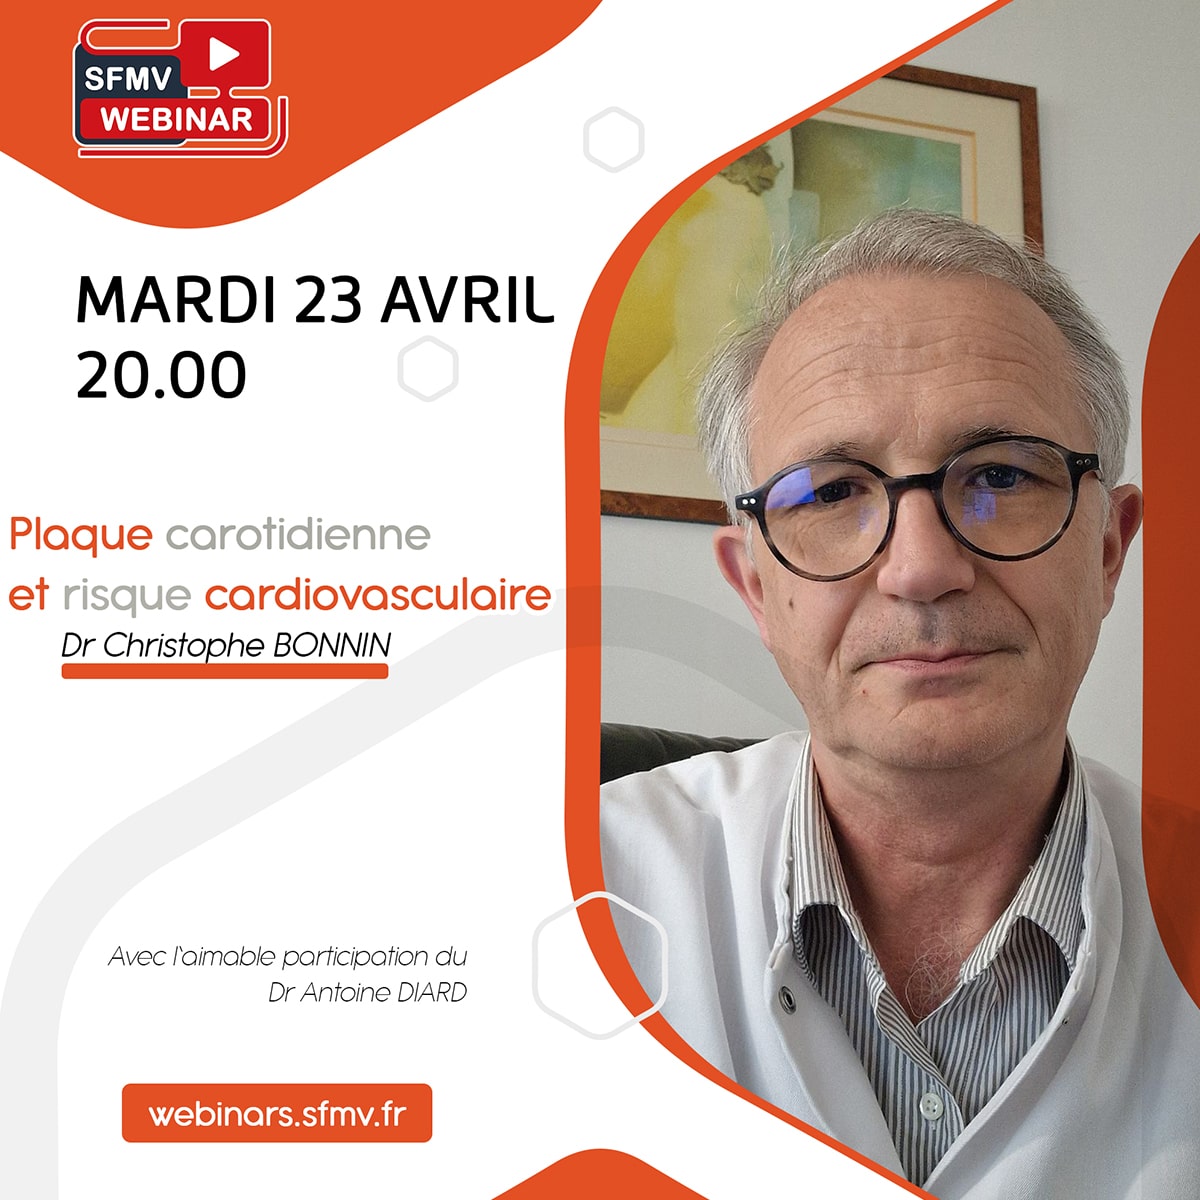 Nouveau RDV webinar ce mardi 23 Avril à 20.00. Le Dr Christophe Bonnin répondra à vos questions en direct après sa présentation sur 'La plaque carotidienne et le risque cardiovasculaire' webinars.sfmv.fr